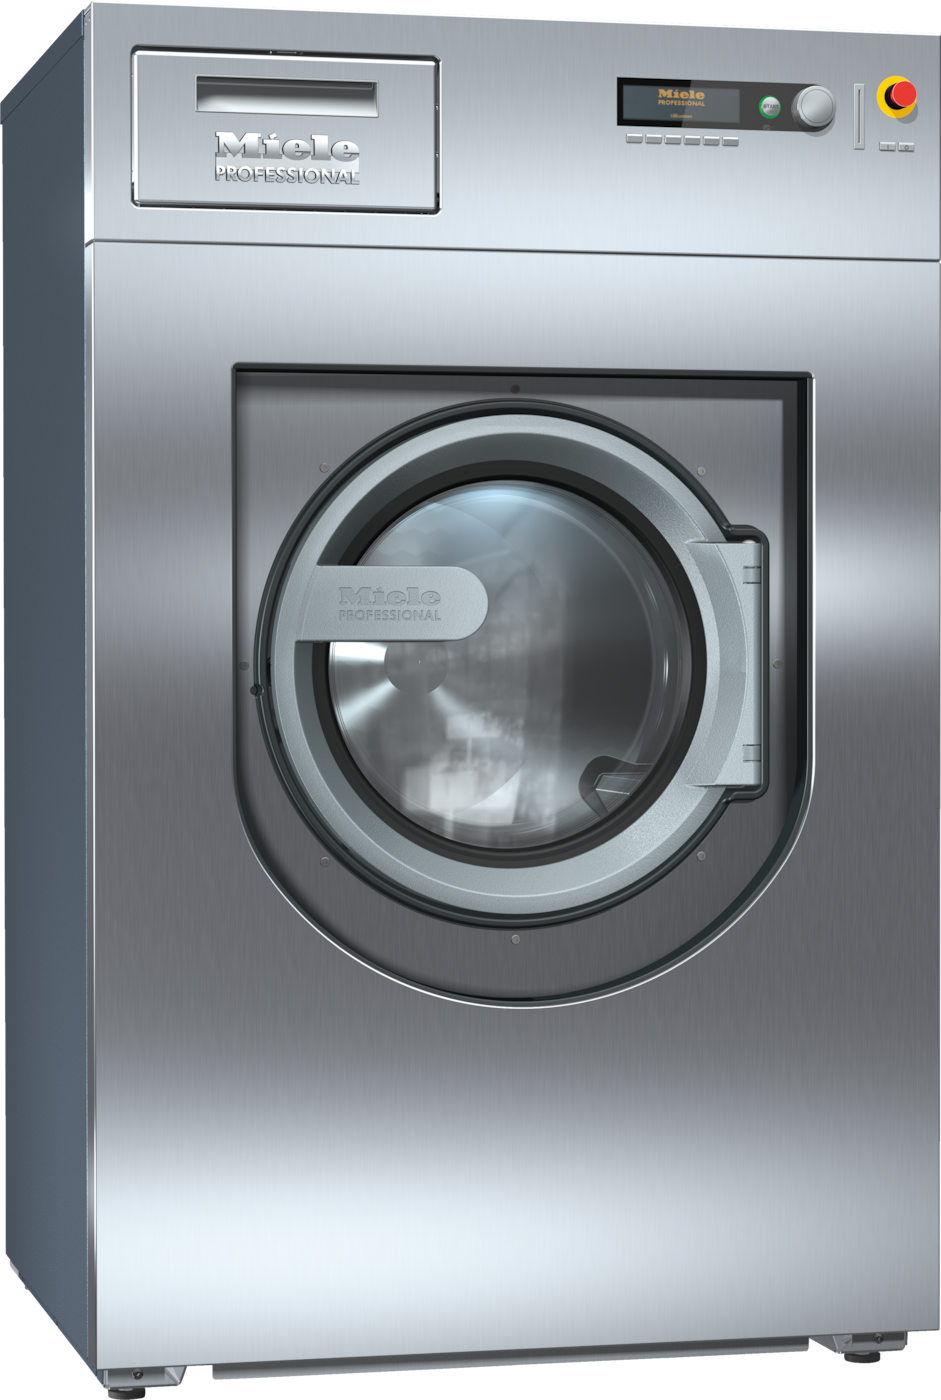 PW 814 [EL SOM WEK MF] - Washing machine, electrically heated 